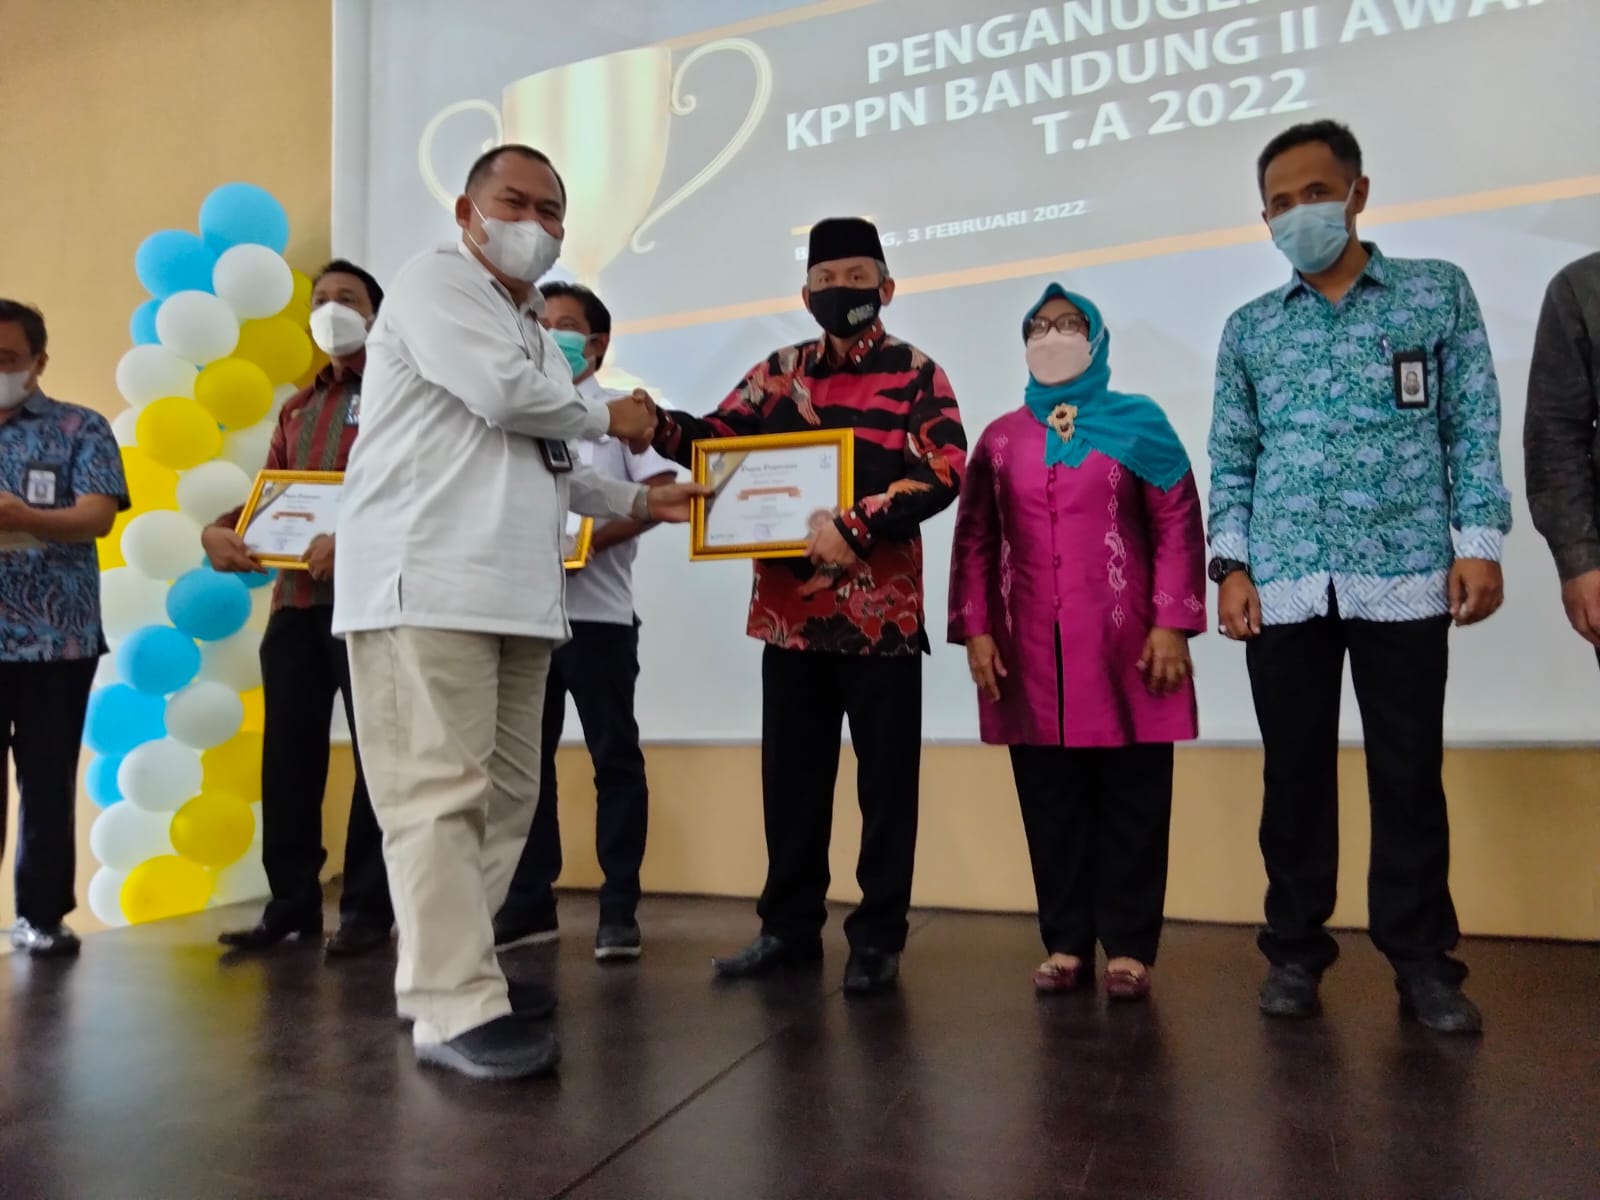 BDK Bandung menerima penghargaan peringkat ke-3 dari KPPN Award Jabar II